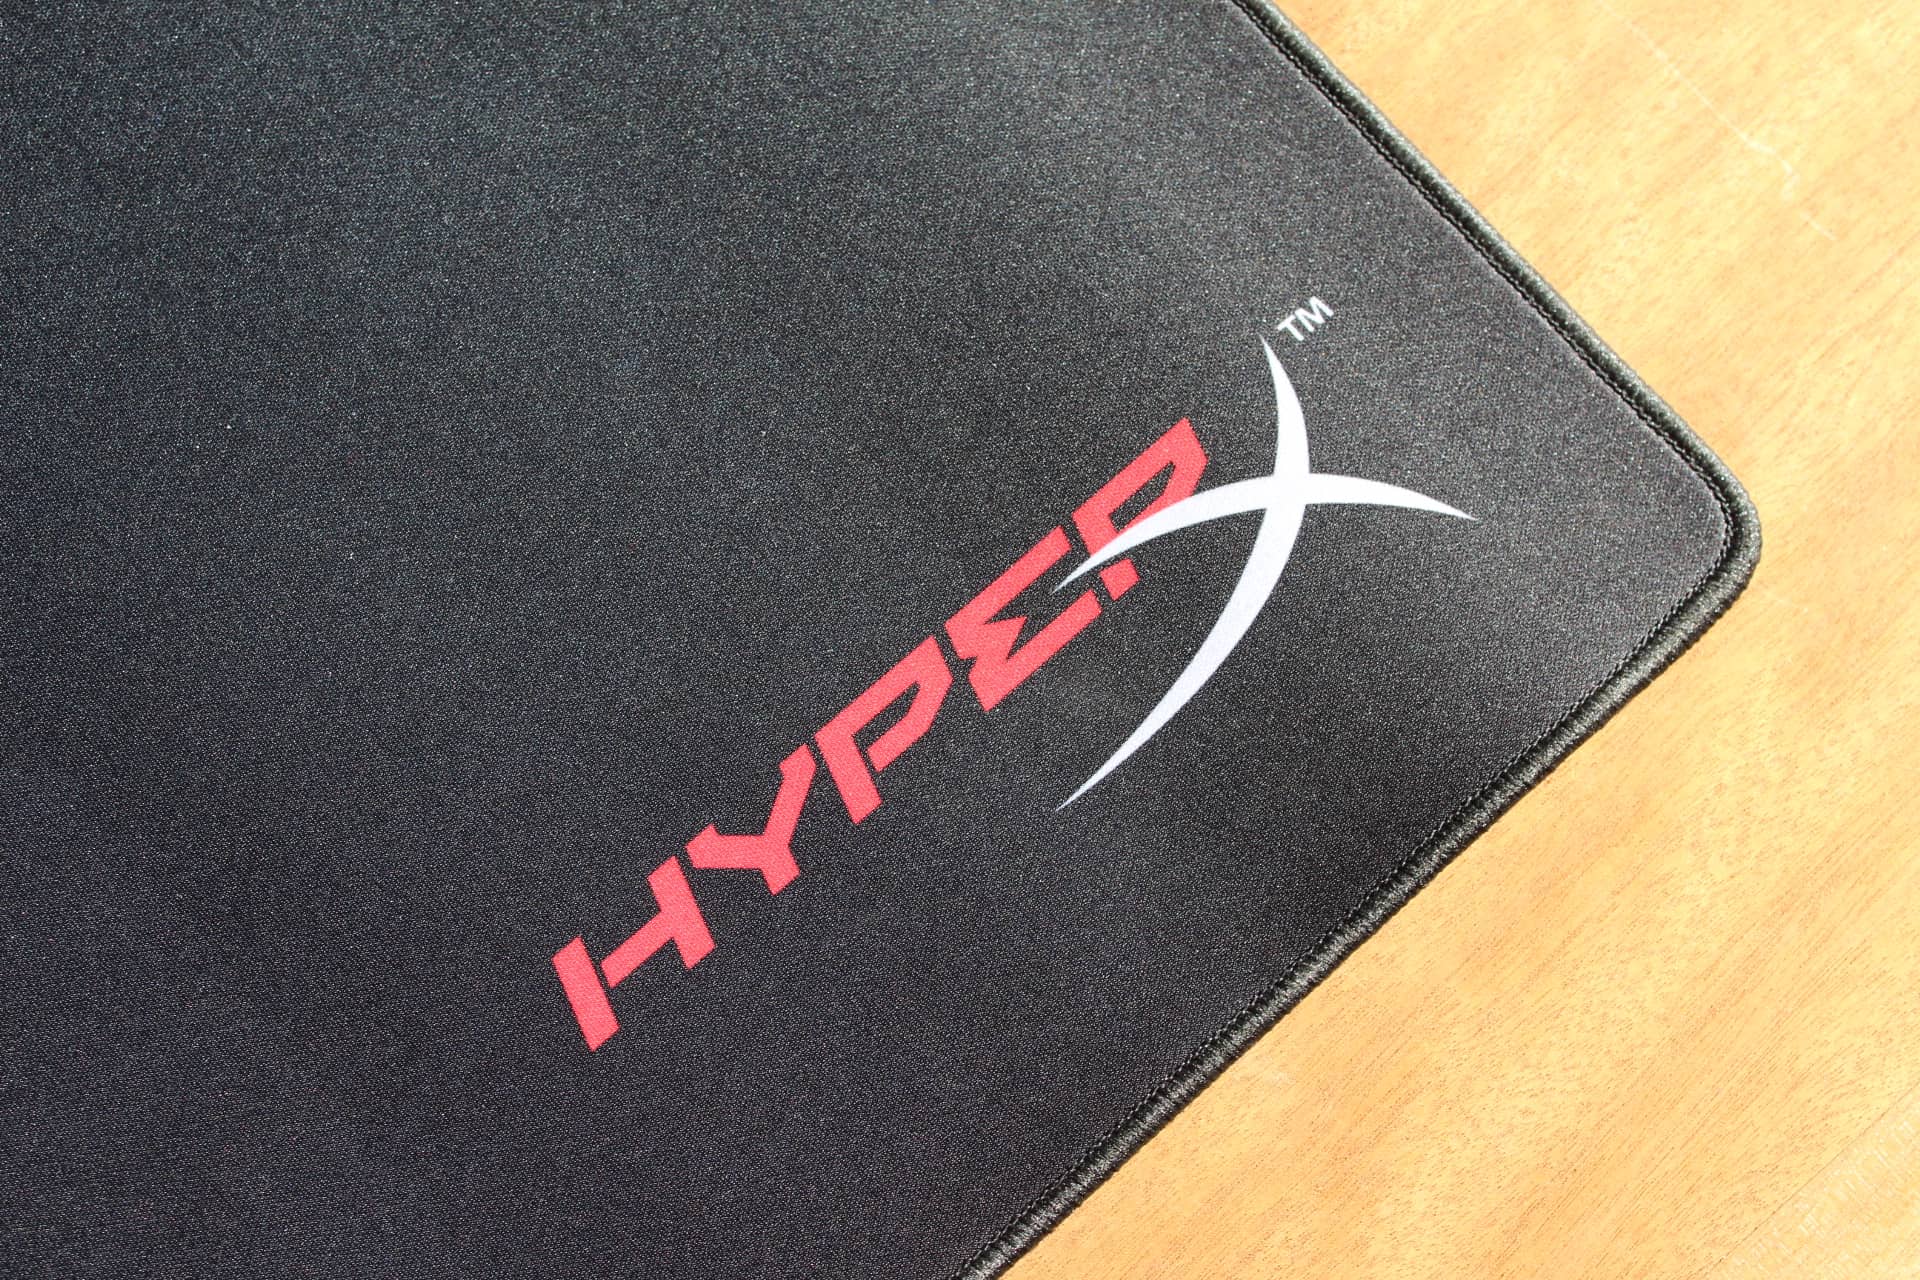 Hyperx Fury S Pro Review Prosettings Net